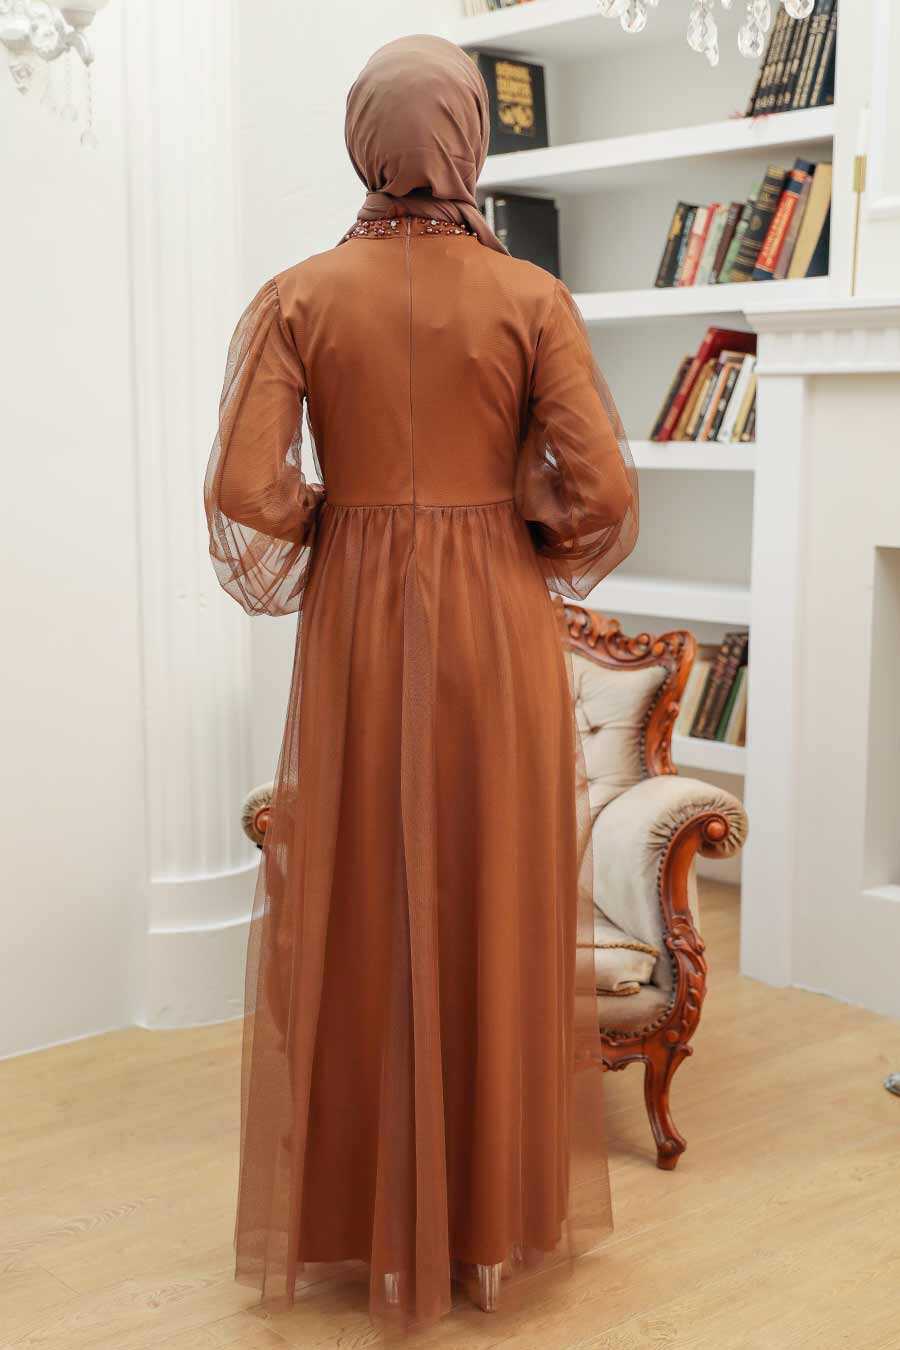 Neva Style - Plus Size Sunuff Colored Islamic Clothing Engagement Dress 9170TB